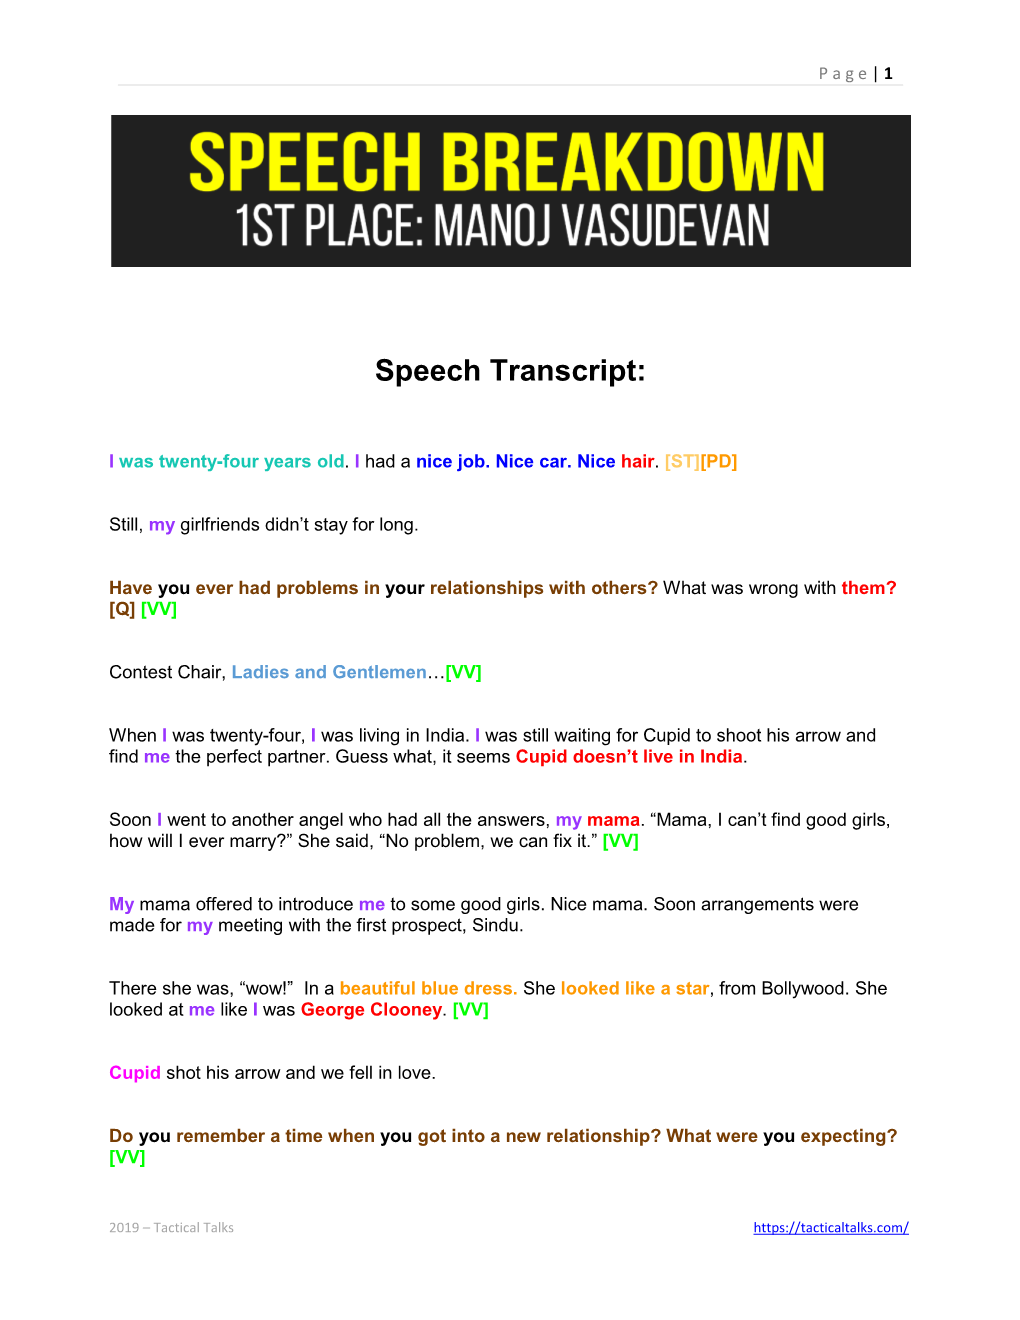 Speech Breakdown